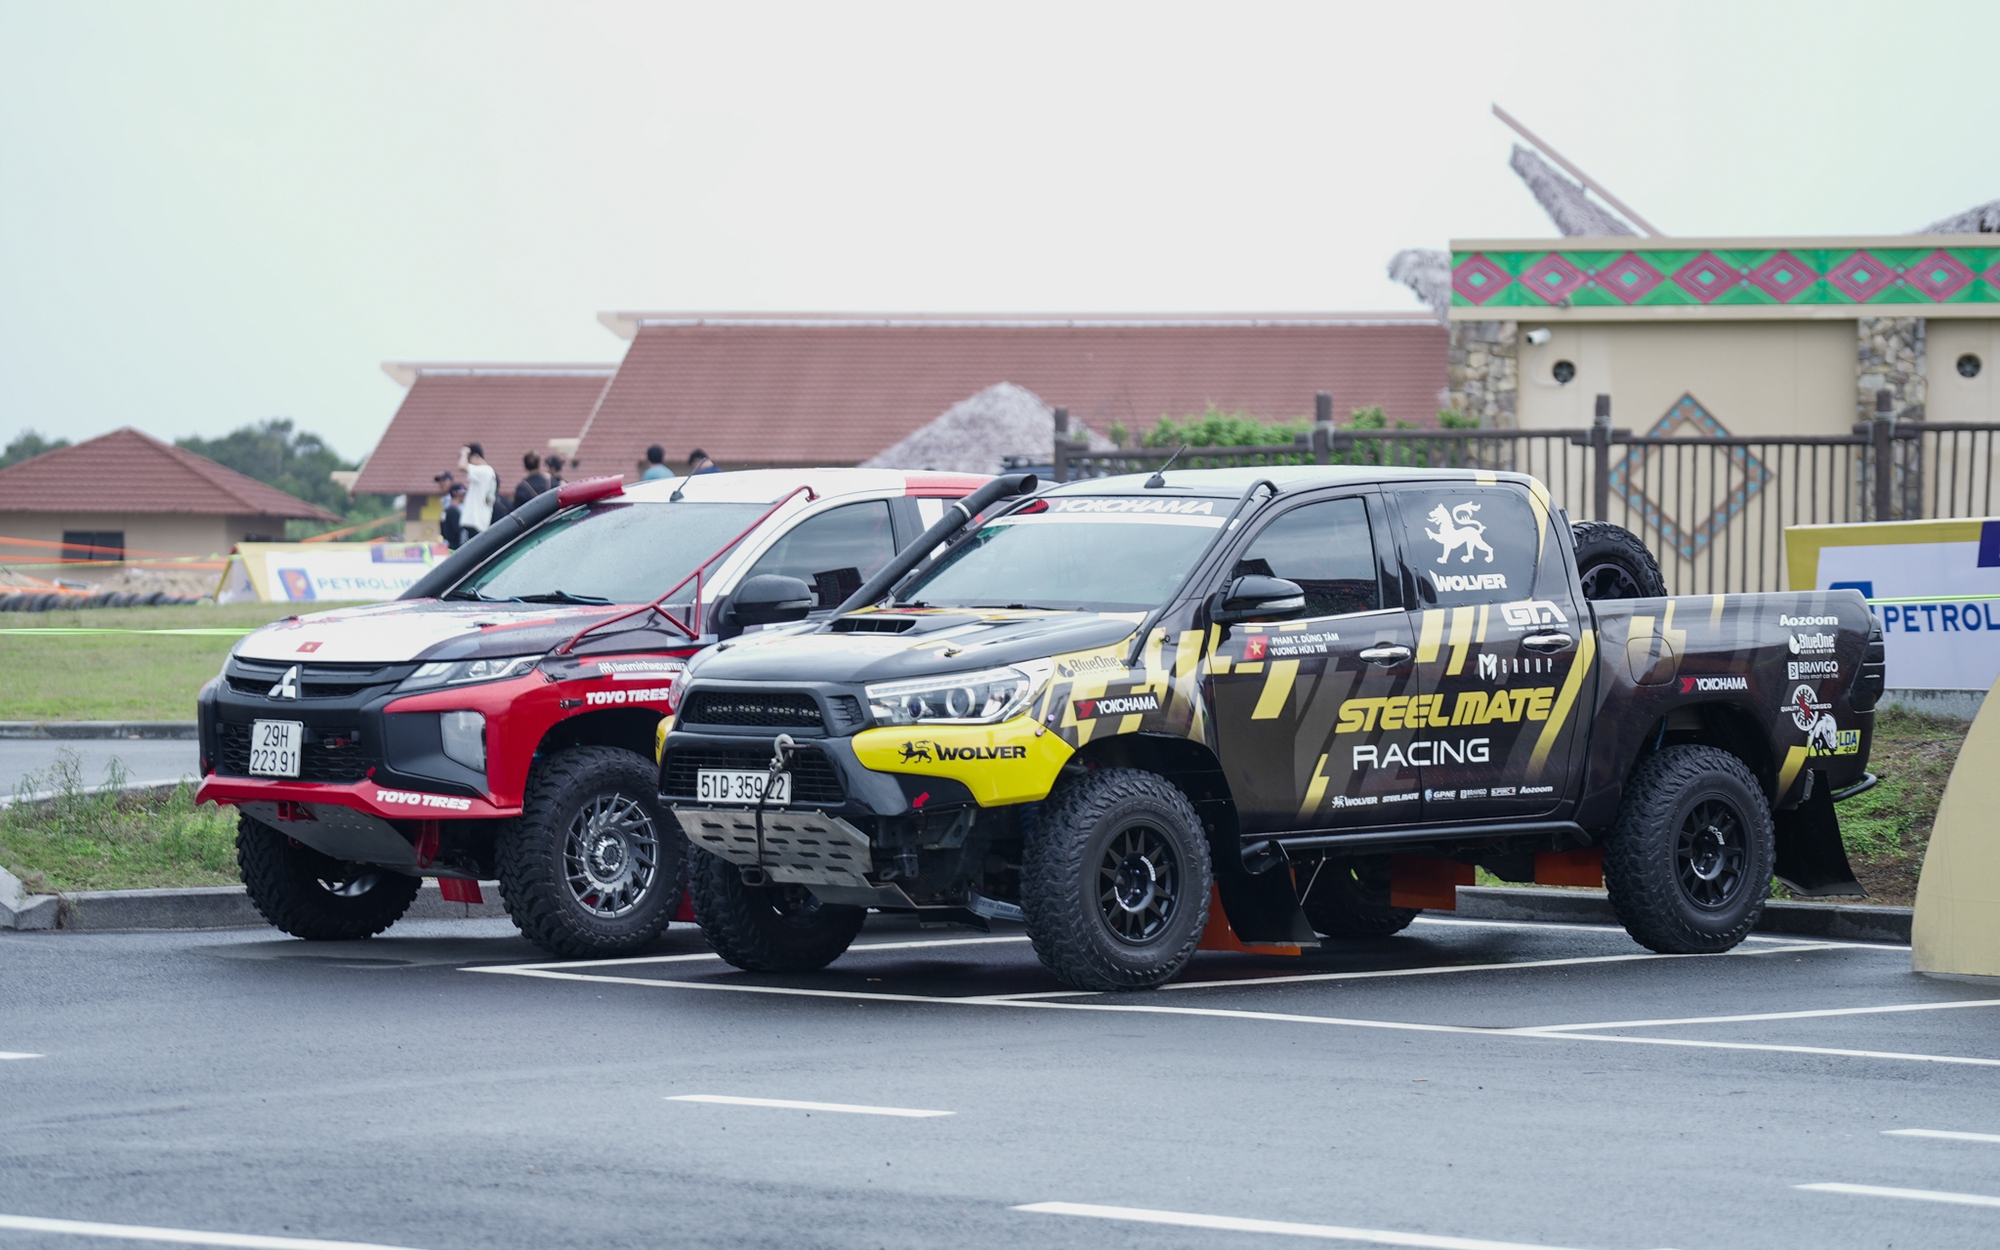 Đội đua Việt Nam thứ 2 tham gia AXCR: ‘Chúng tôi chọn Toyota Hilux vì bền và mua phụ tùng ở đâu cũng được’ - Ảnh 4.